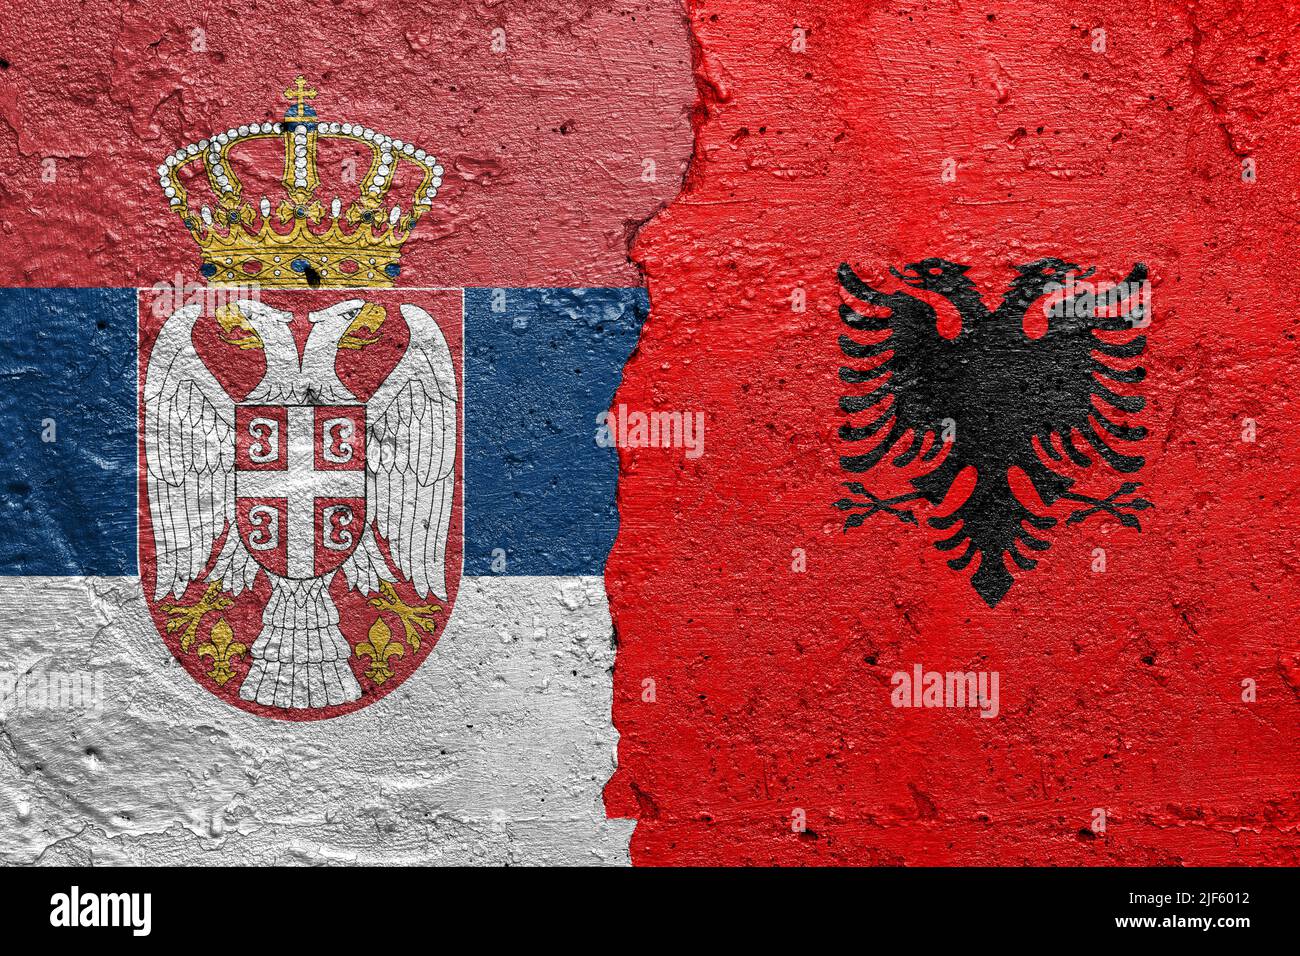 Drapeaux de Serbie et d'Albanie - mur en béton fissuré peint avec un drapeau serbe à gauche et un drapeau albanais à droite Banque D'Images